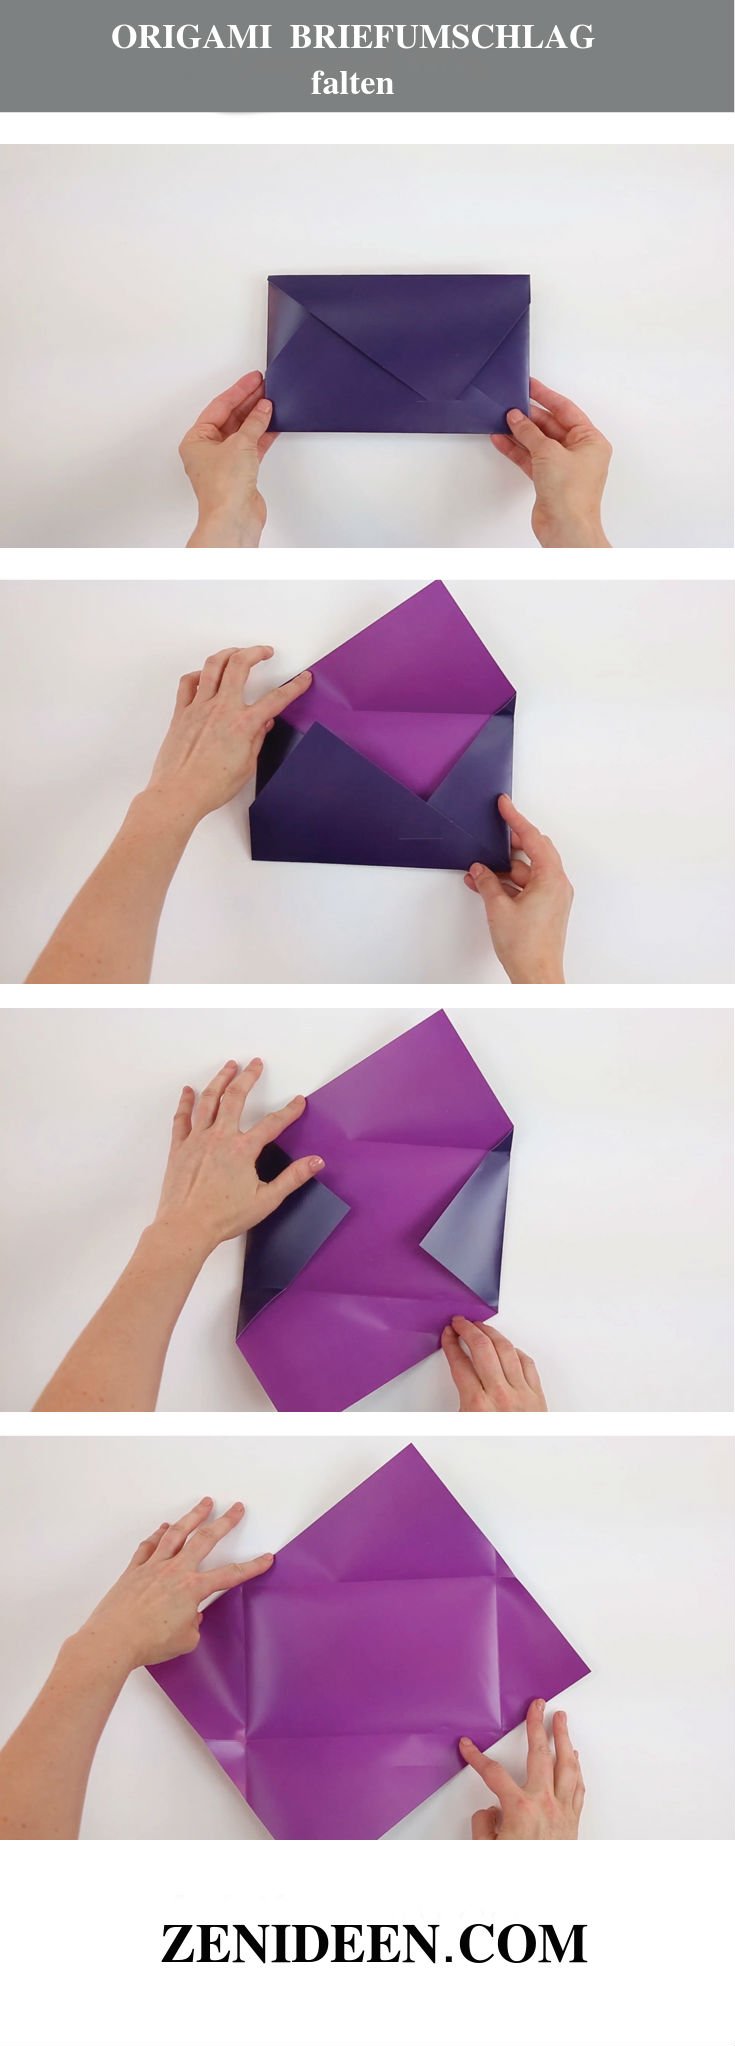 Origami falten Briefumschlag basteln